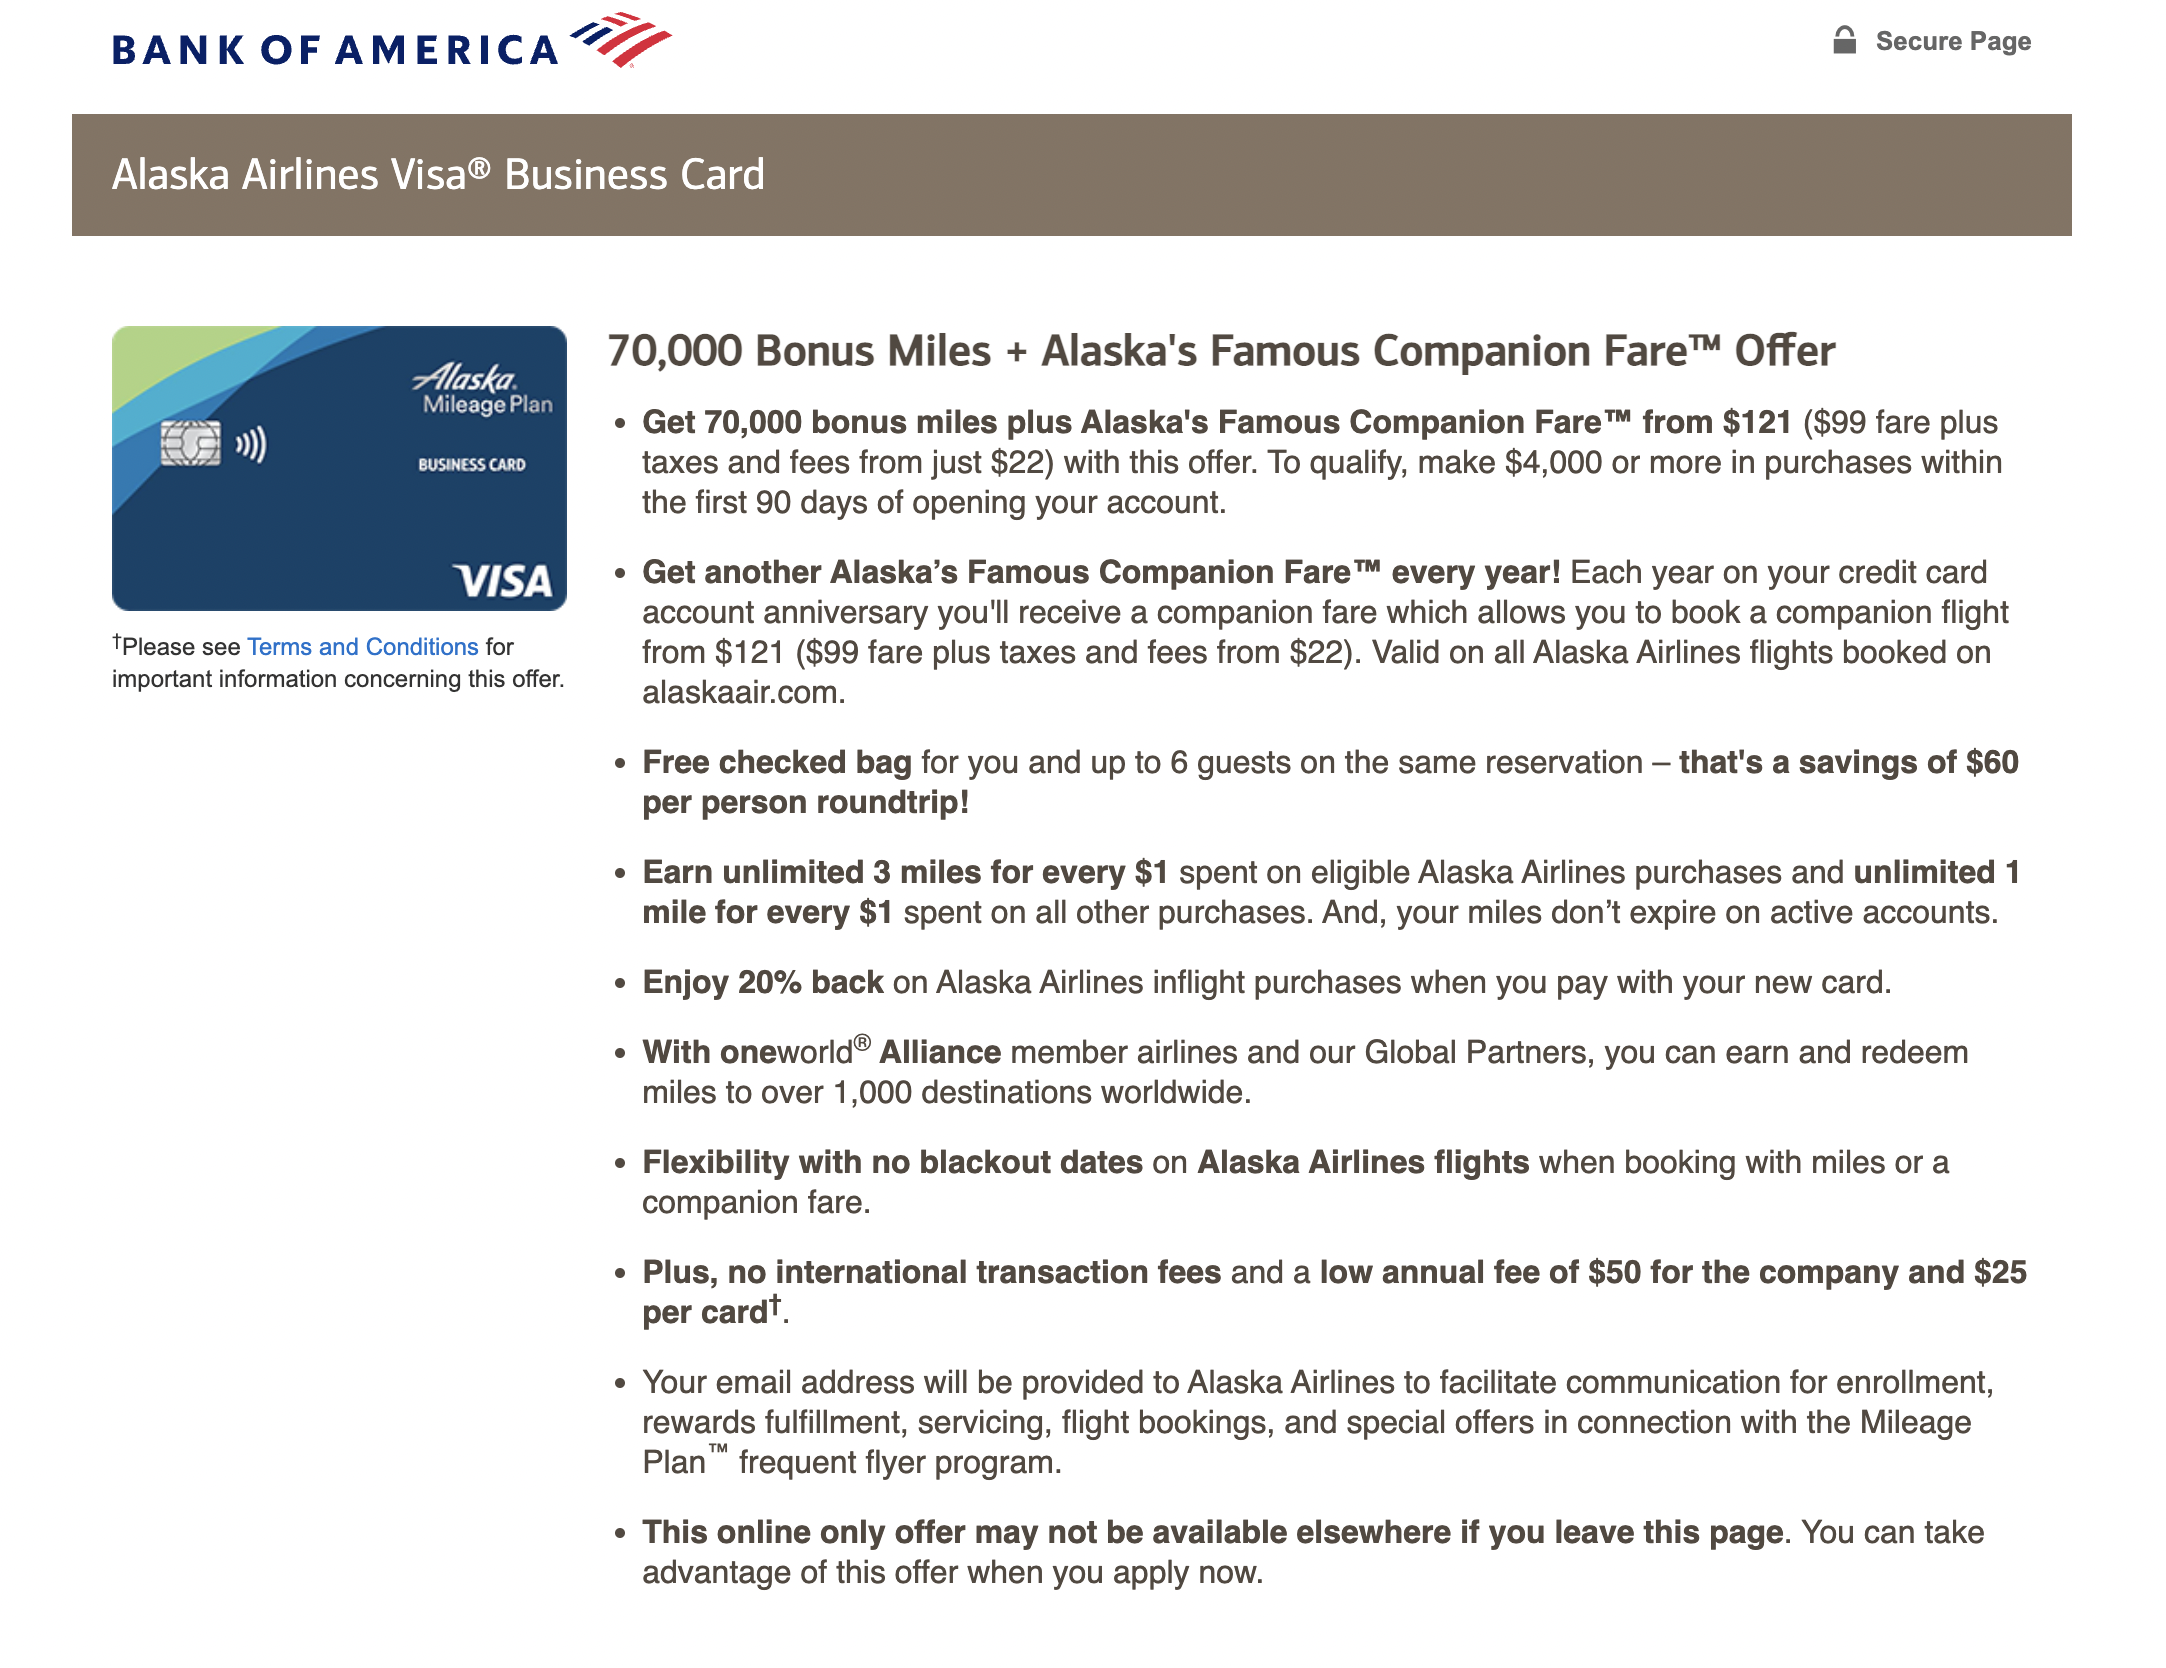 Bank of America Alaska Airlines Business Visa 70k offer + BOGO